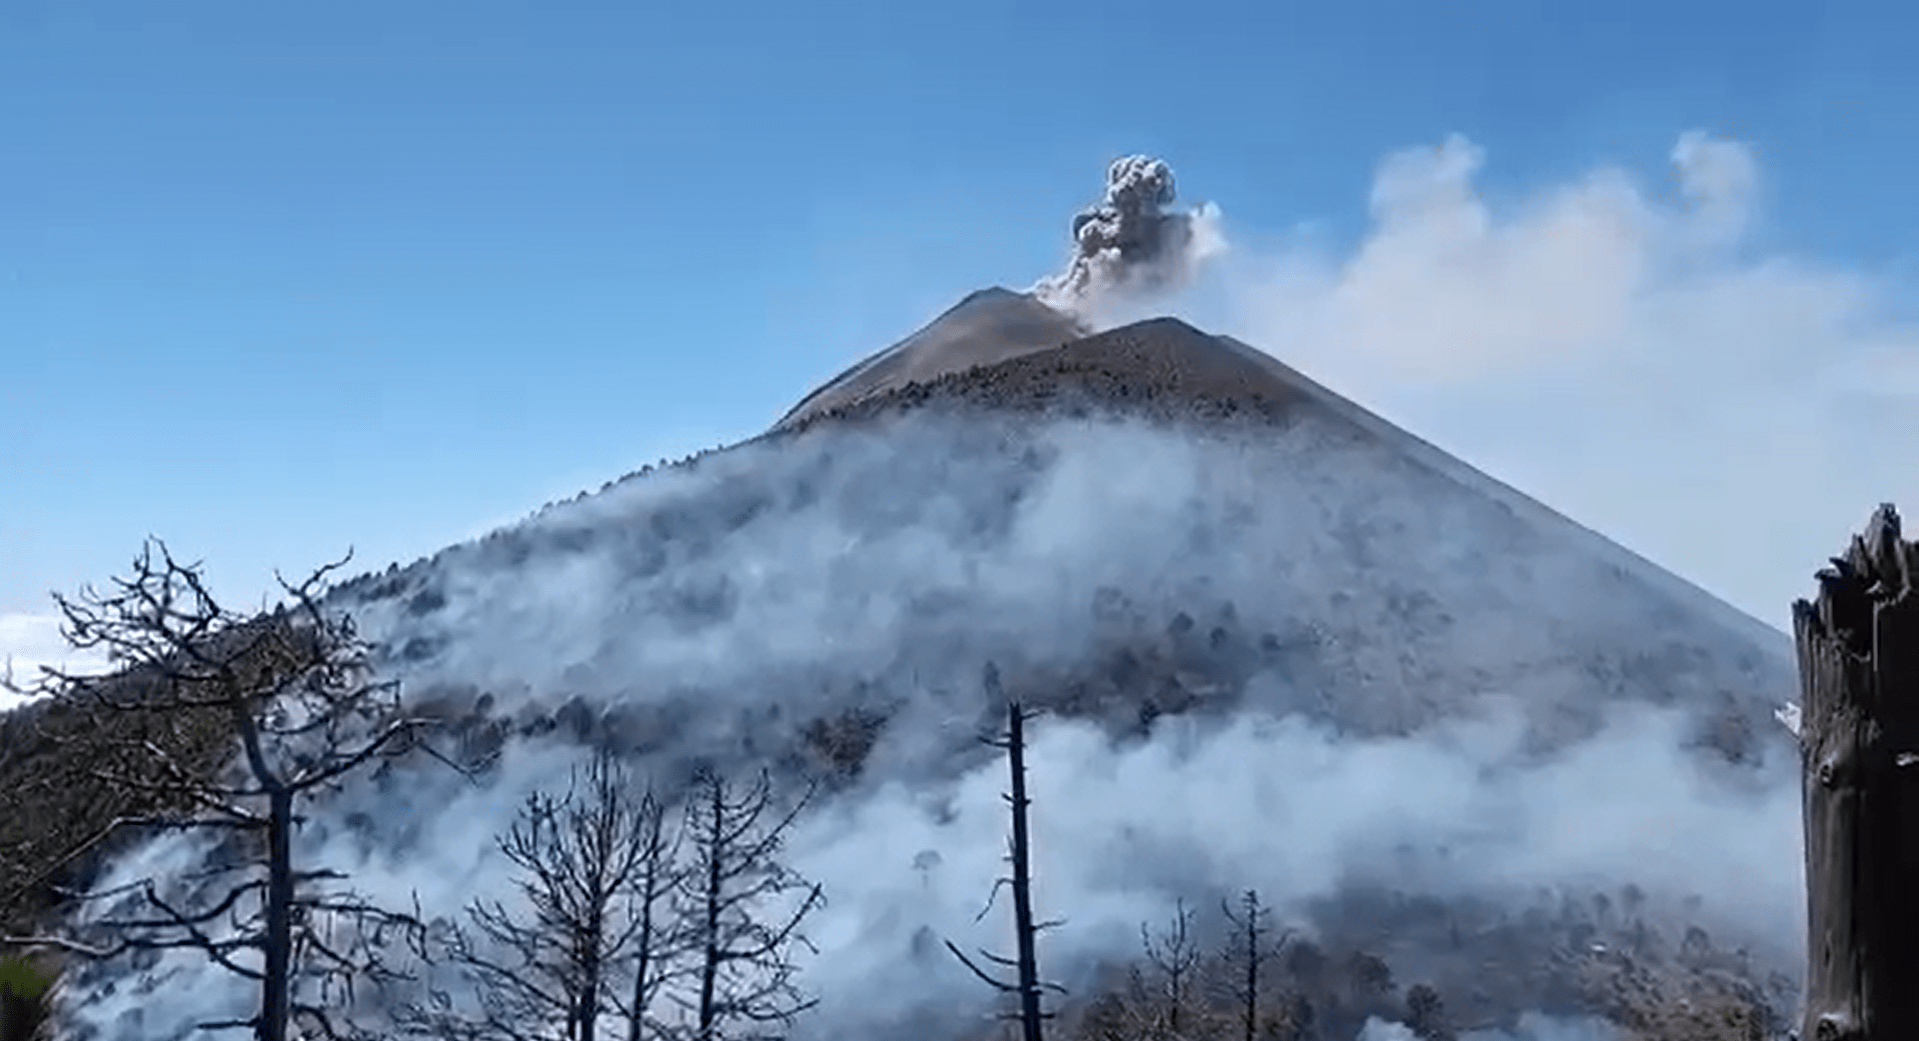 El incendio se extendió tras la erupción del volcán de Fuego. (Foto Guatevisión: Conred)